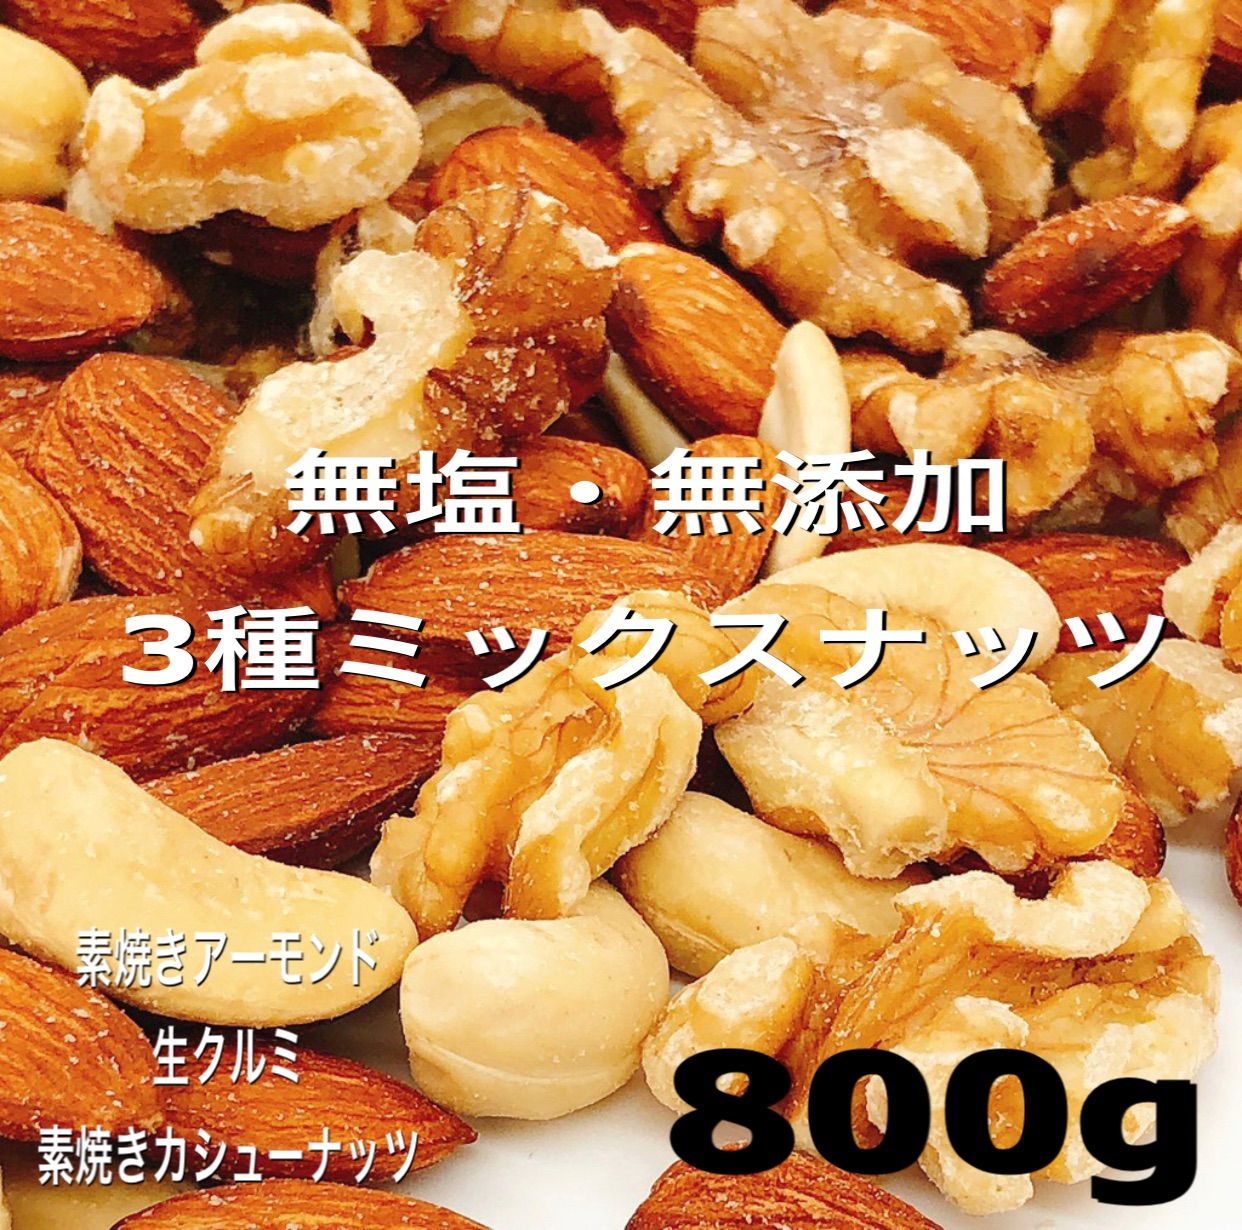 ❤️SALE❤️ 3種ミックスナッツ 800g ❤️素焼きアーモンド カシュー